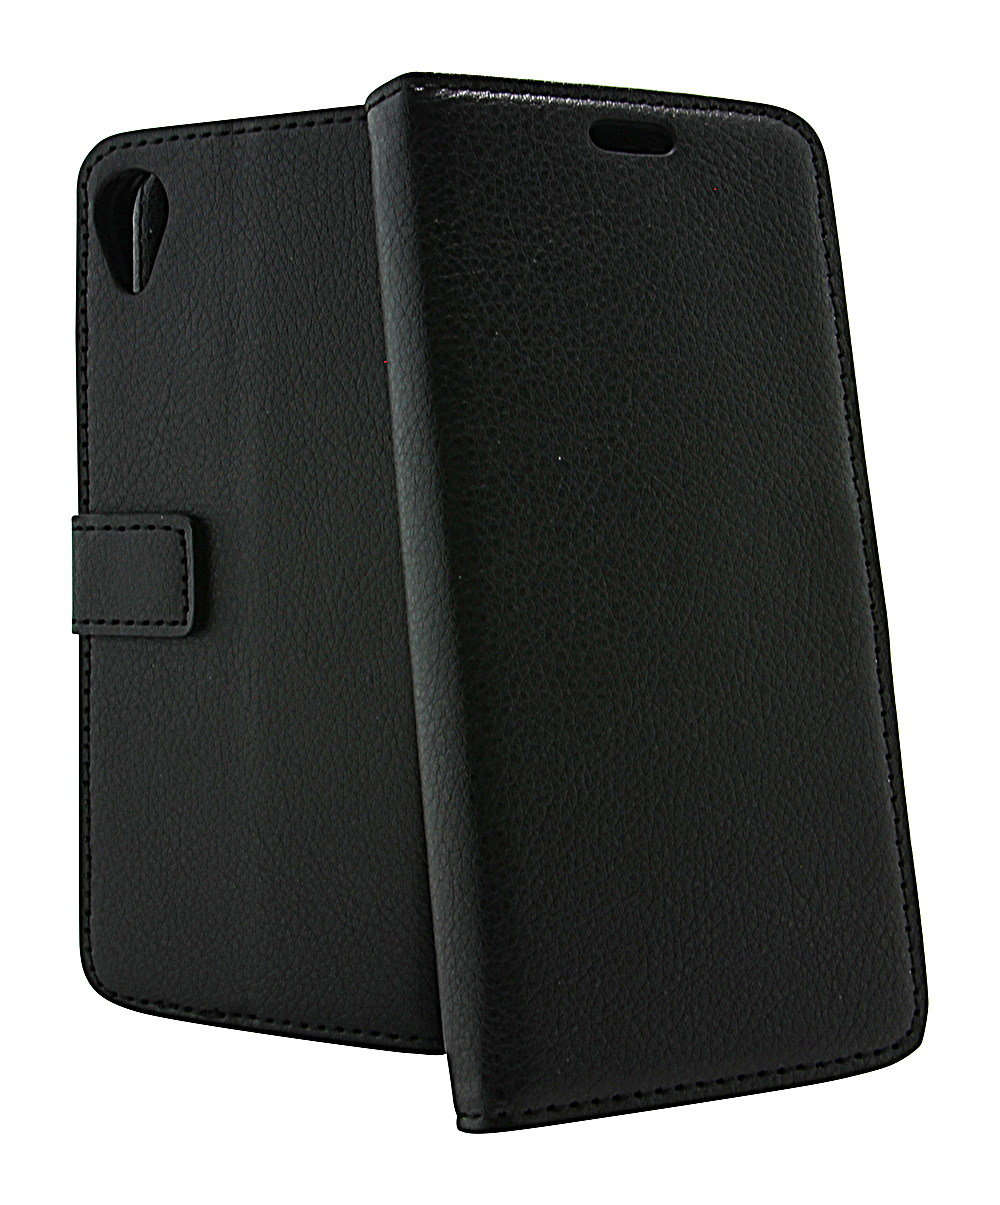 Standcase Wallet Asus ZenFone Live L1 (ZA550KL)